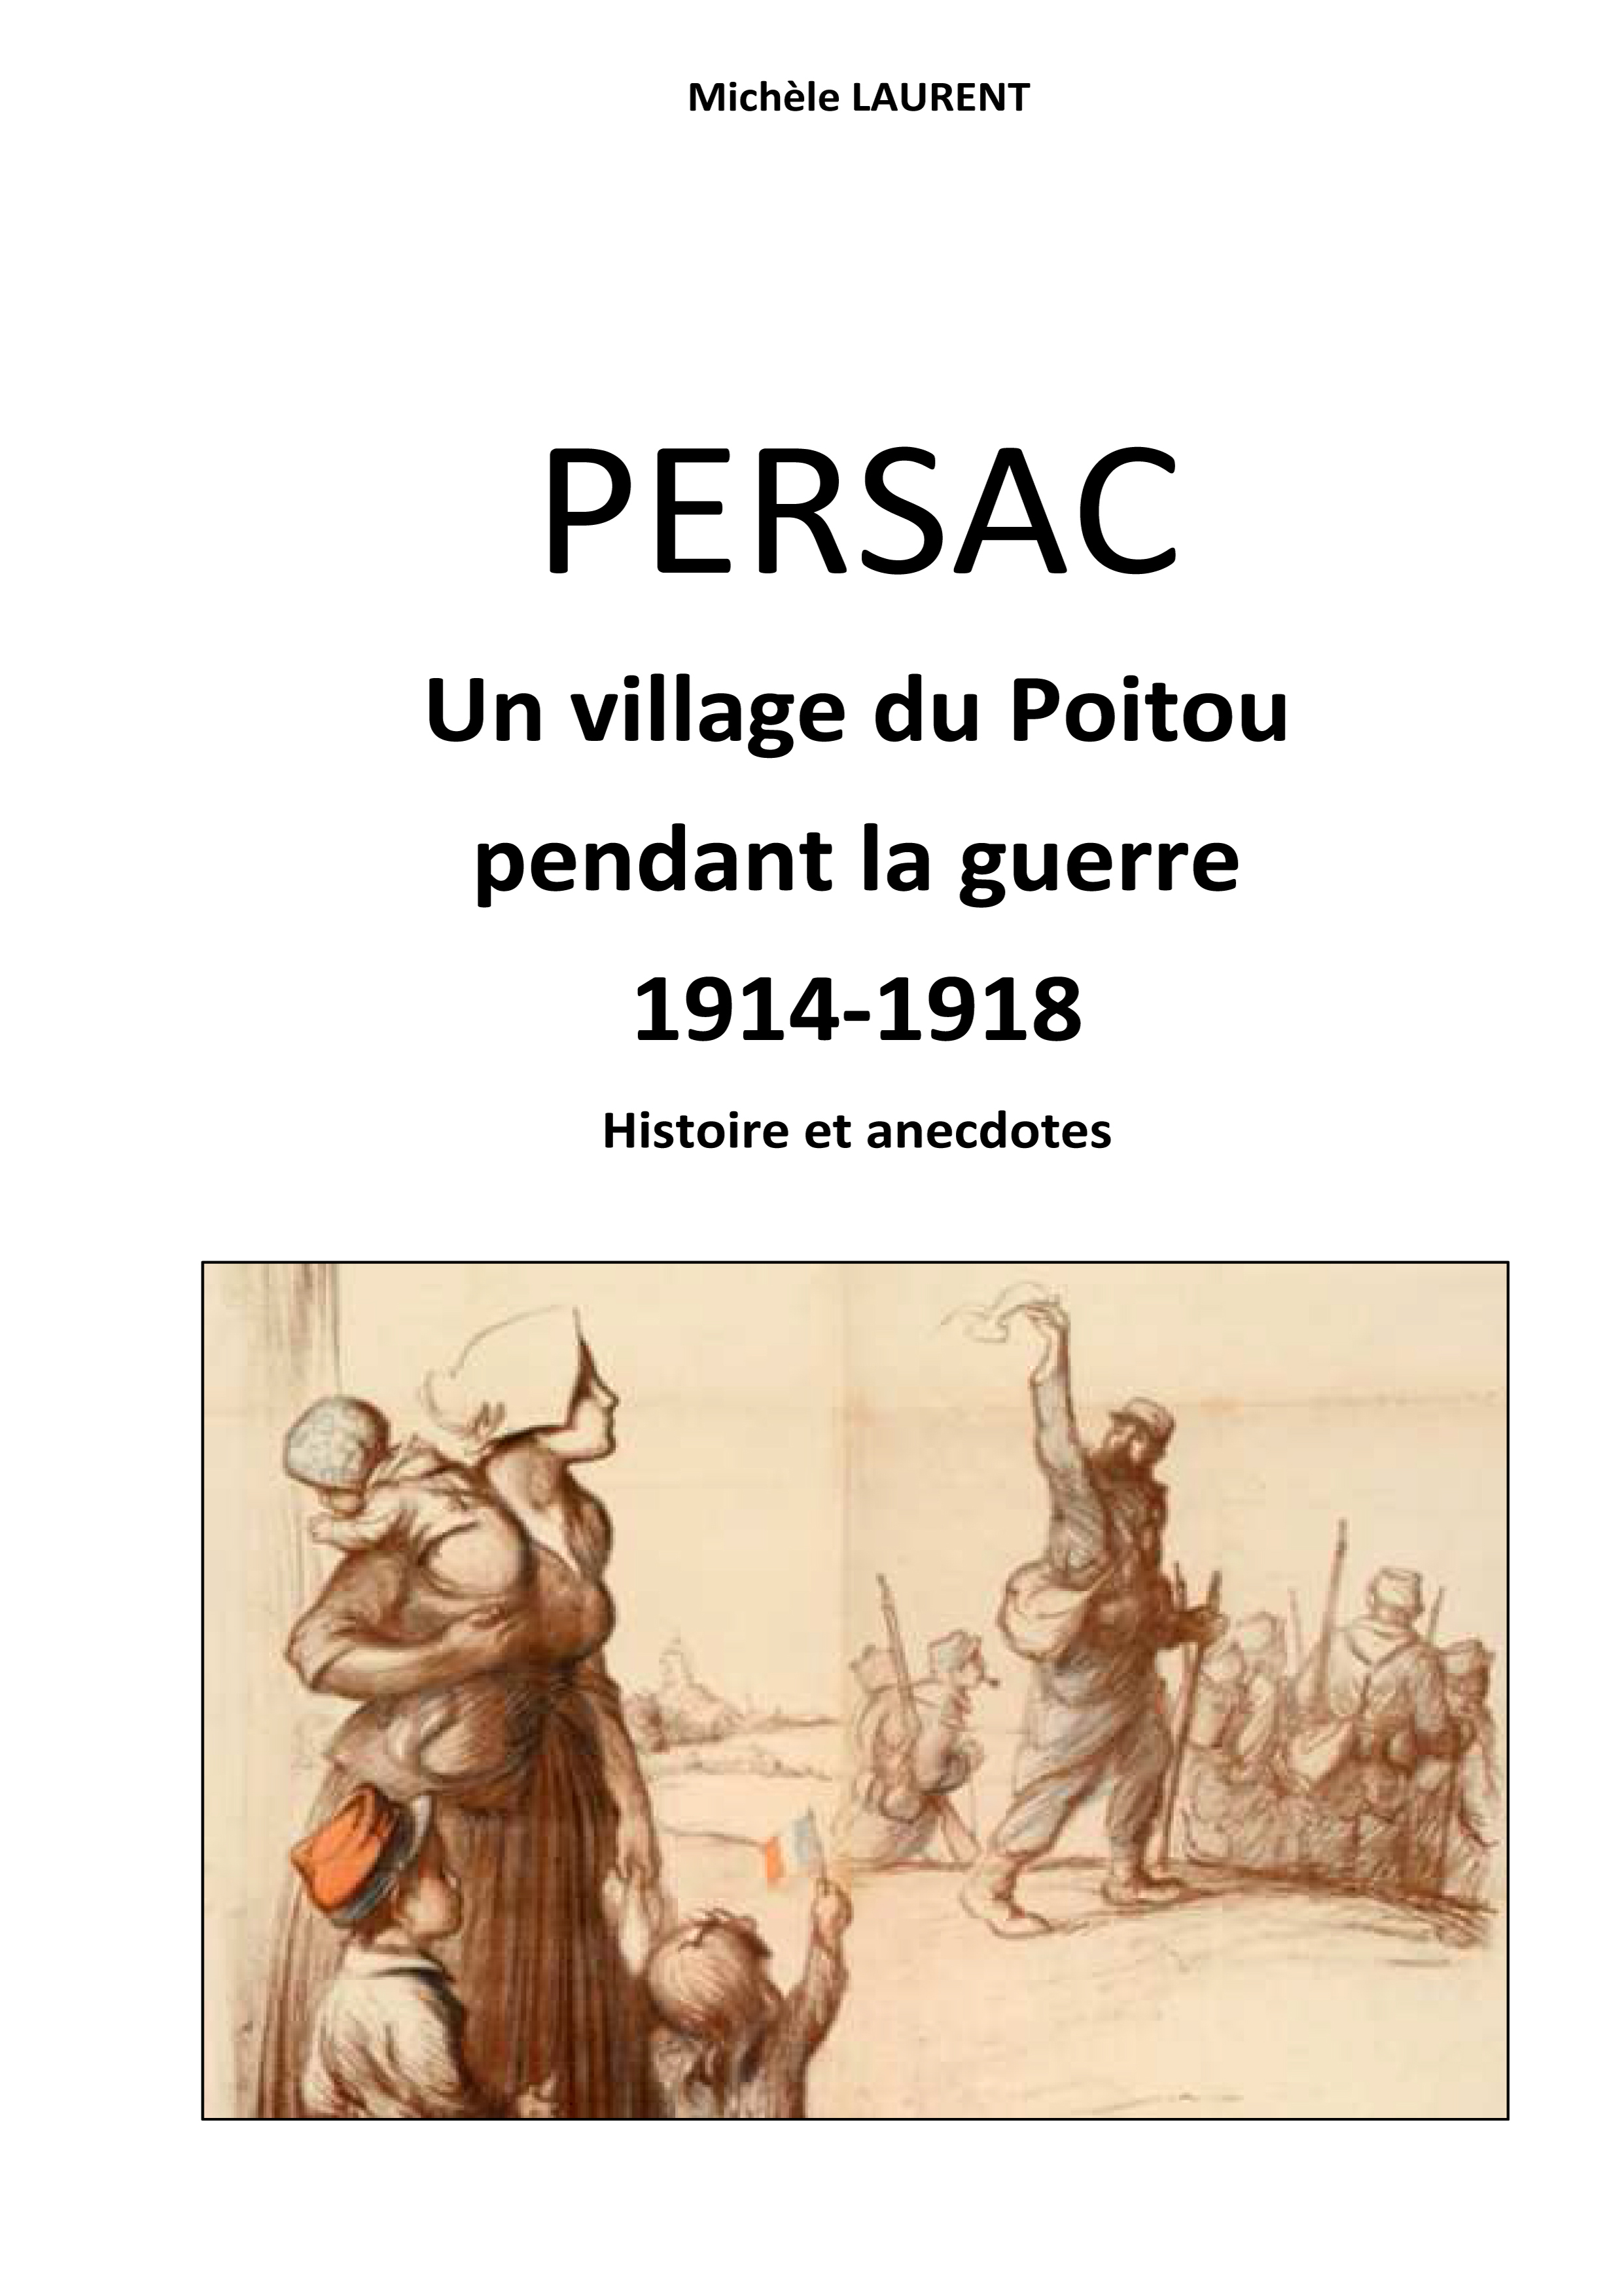 Persac village pendant la guerre 14-18